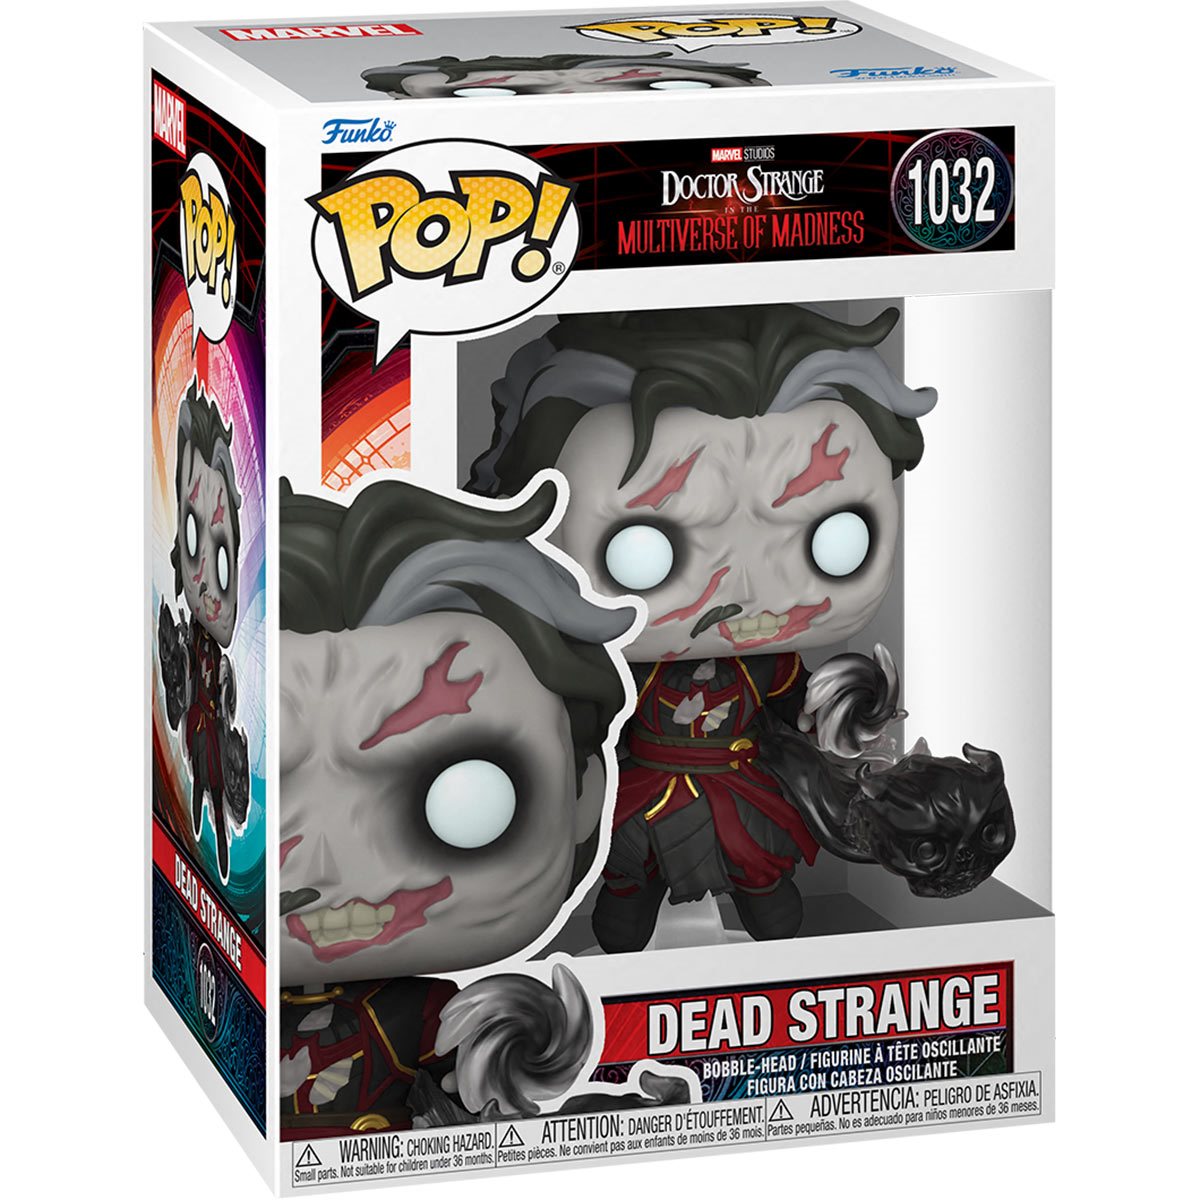 Marvel: Doctor Strange - Dead Strange Pop! Vinyl Figure (1032)